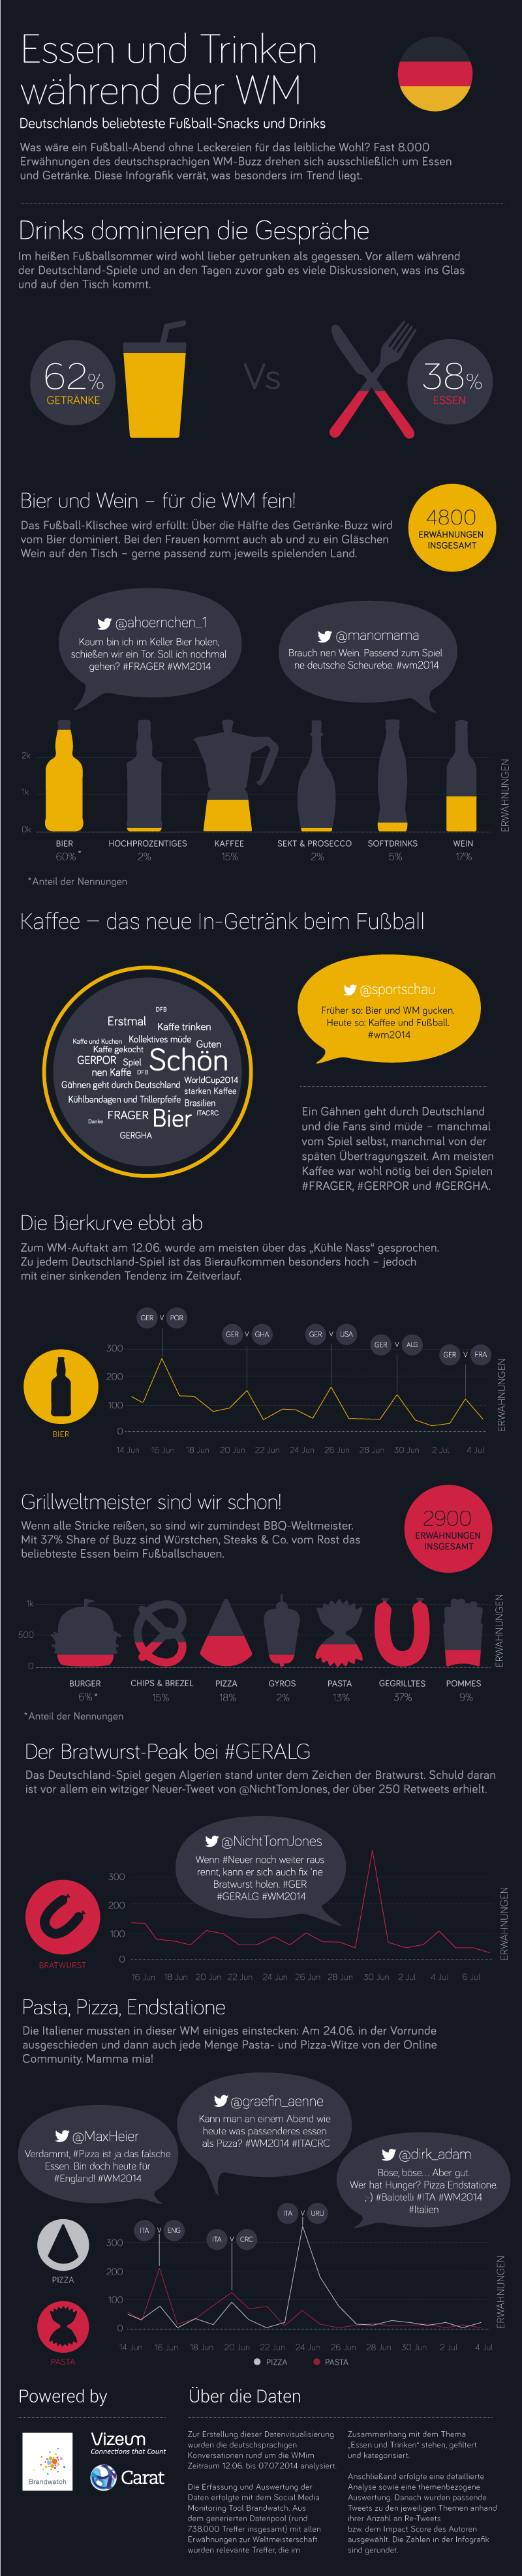 Brandwatch Infografik Essen und Trinken WM